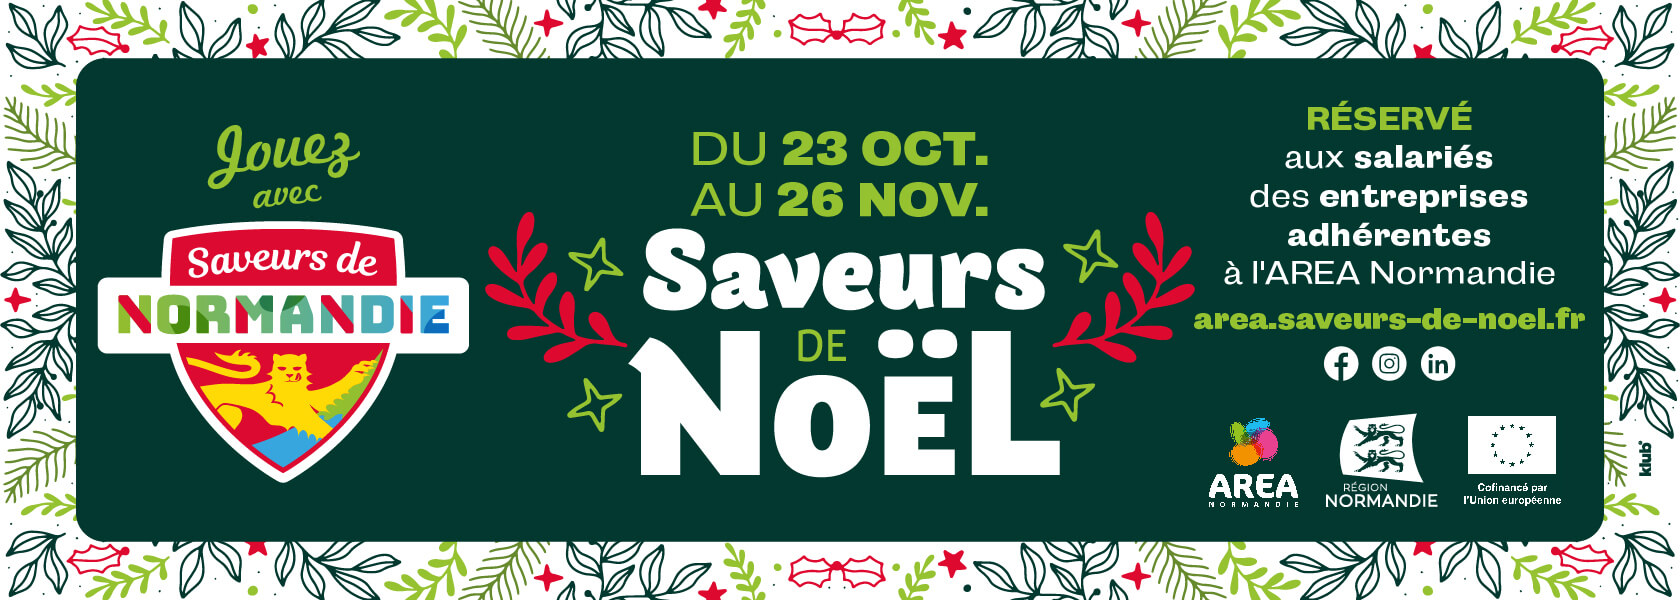 Saveurs de Noël - Saveurs de Normandie - AREA Normandie